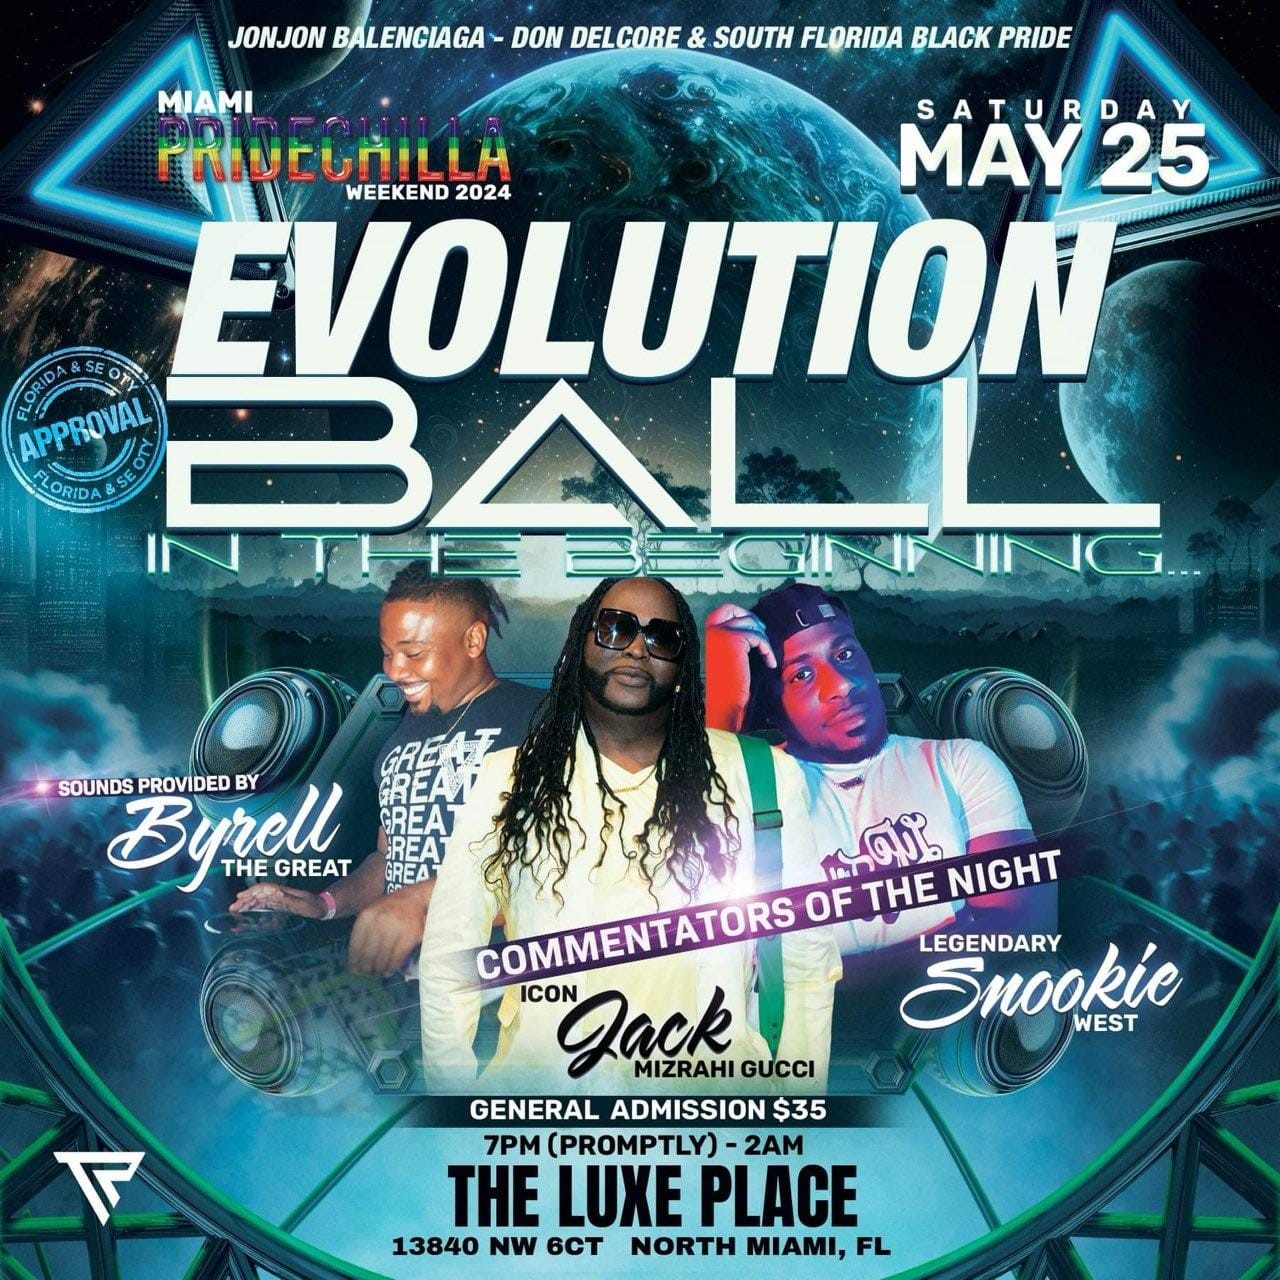 Evolution Ball  on may. 25, 19:00@The Luxe Place - Compra entradas y obtén información enAfro Pride Federation pridechillamusicfestival